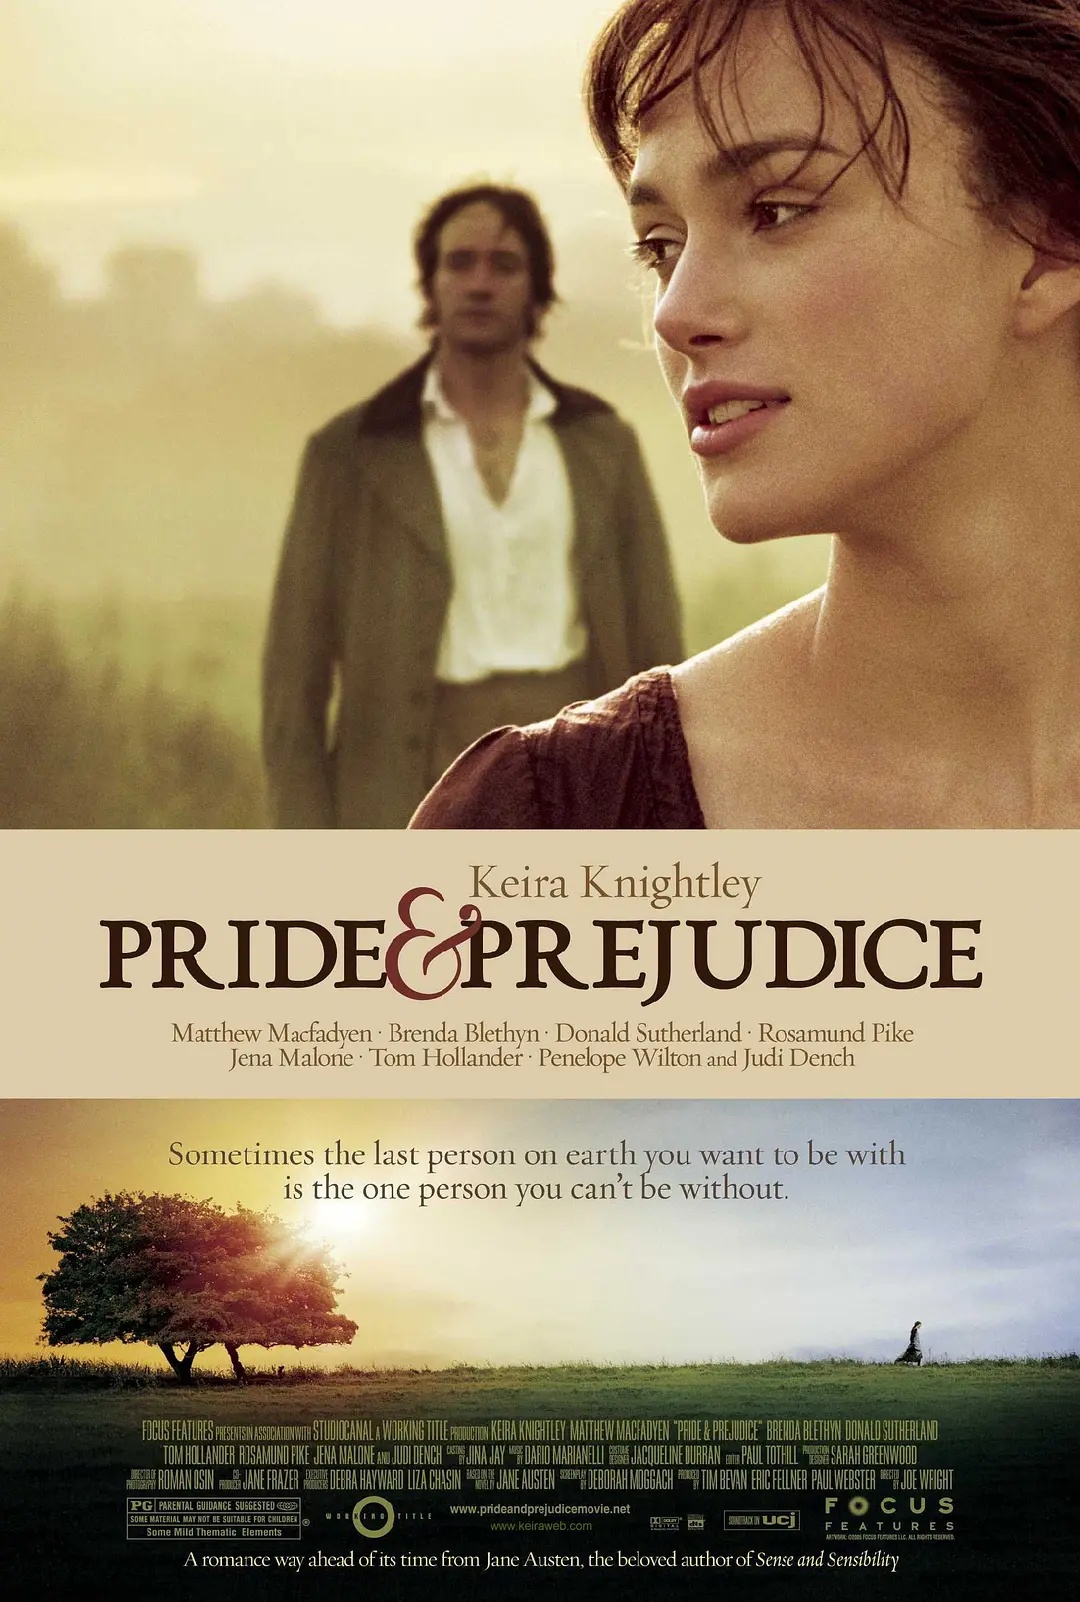 pride-and-prejudice-movie.jpg